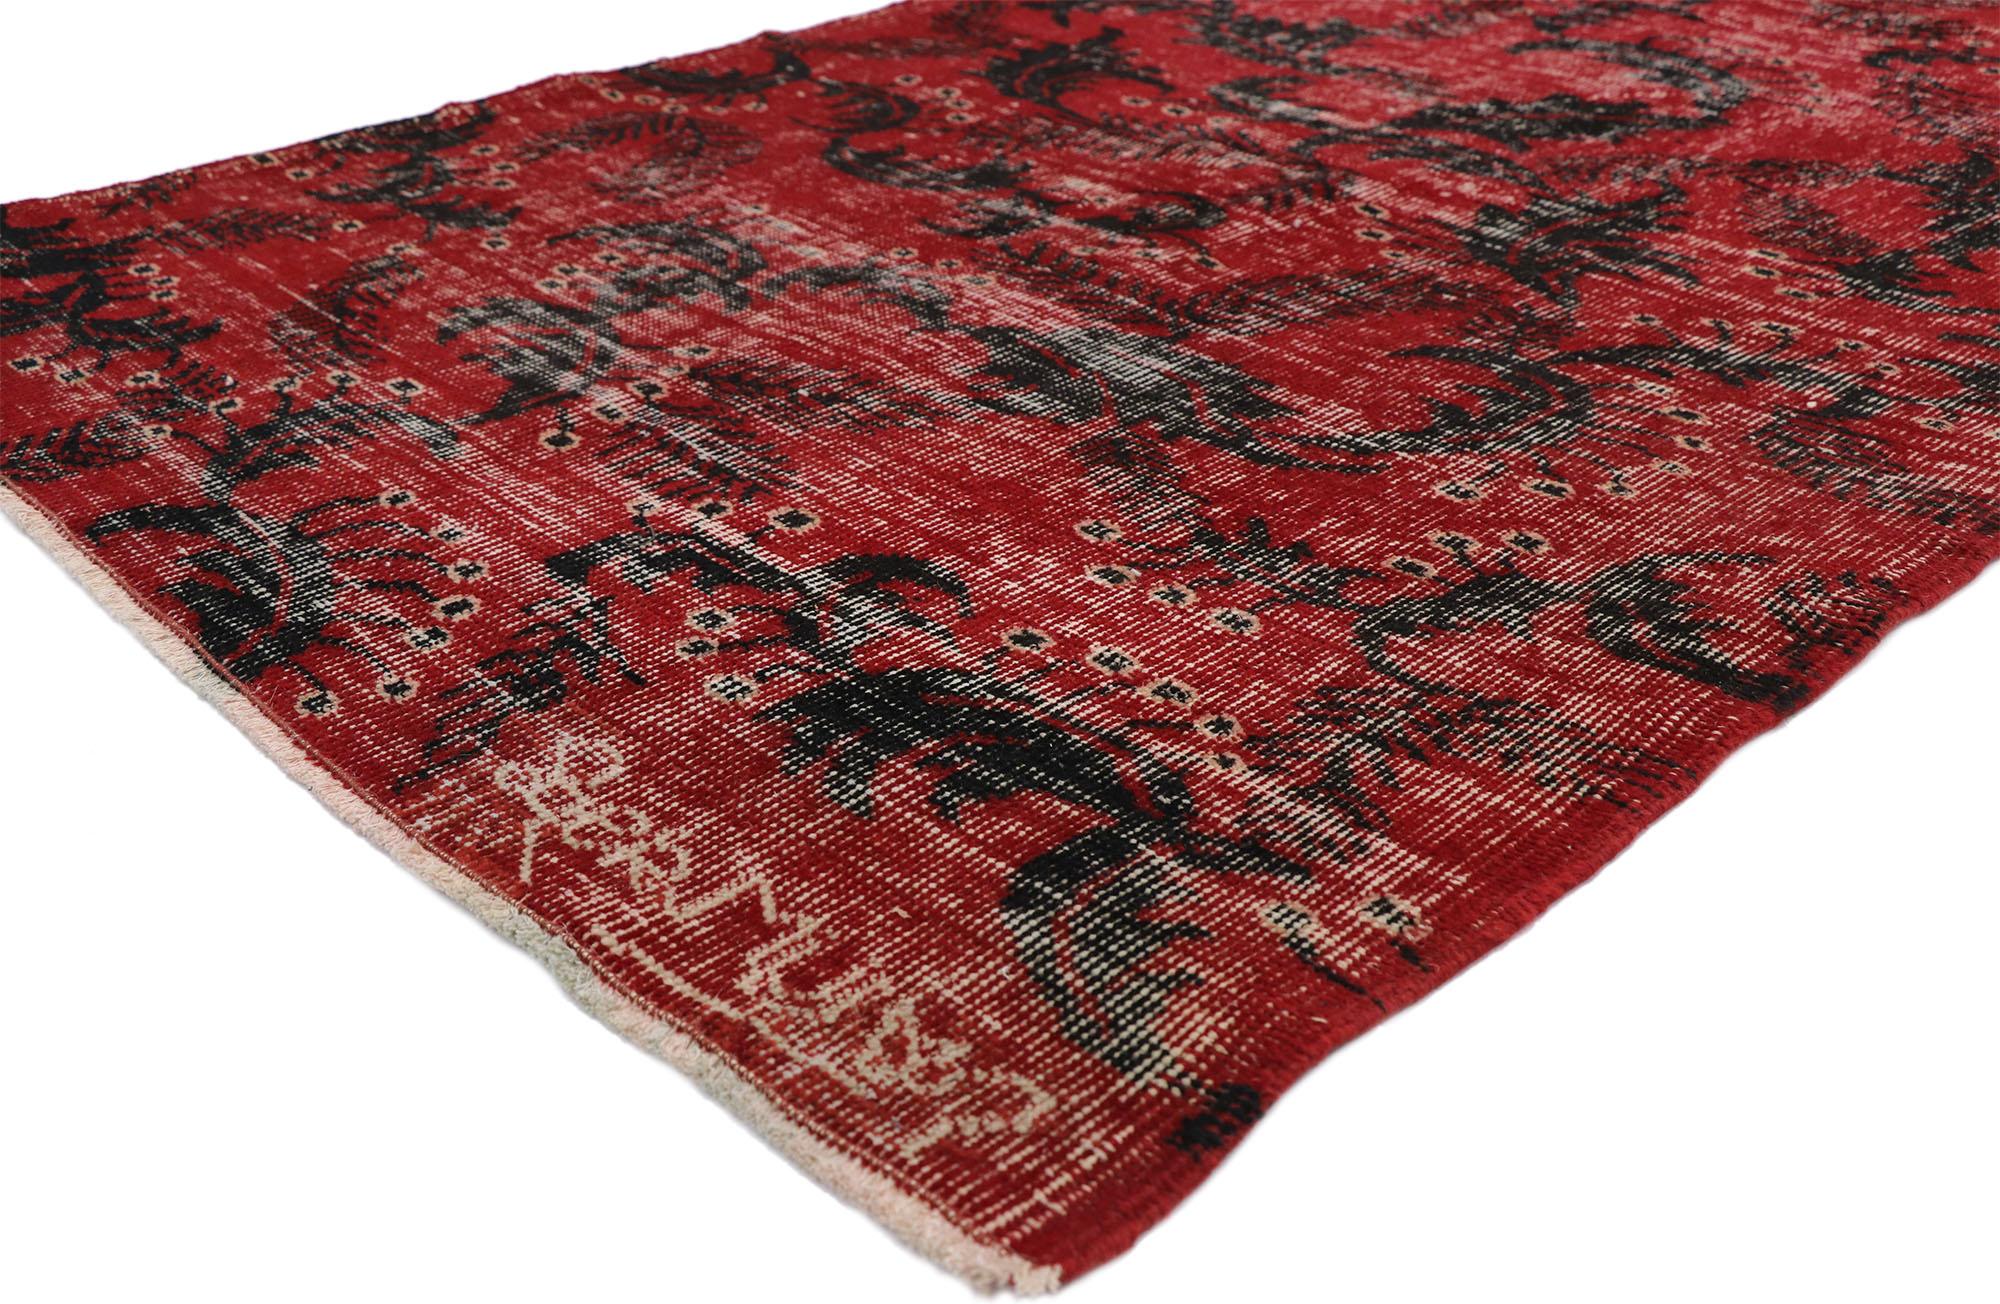 52588 Zeki Muren Distressed Vintage Türkischer Sivas Teppich mit Biophilia Prairie Stil. Dieser handgeknüpfte türkische Sivas-Teppich aus Wolle, der Elemente der Prärie-Schule widerspiegelt, aber mit einer kräftigen Farbgebung versehen ist, erweckt